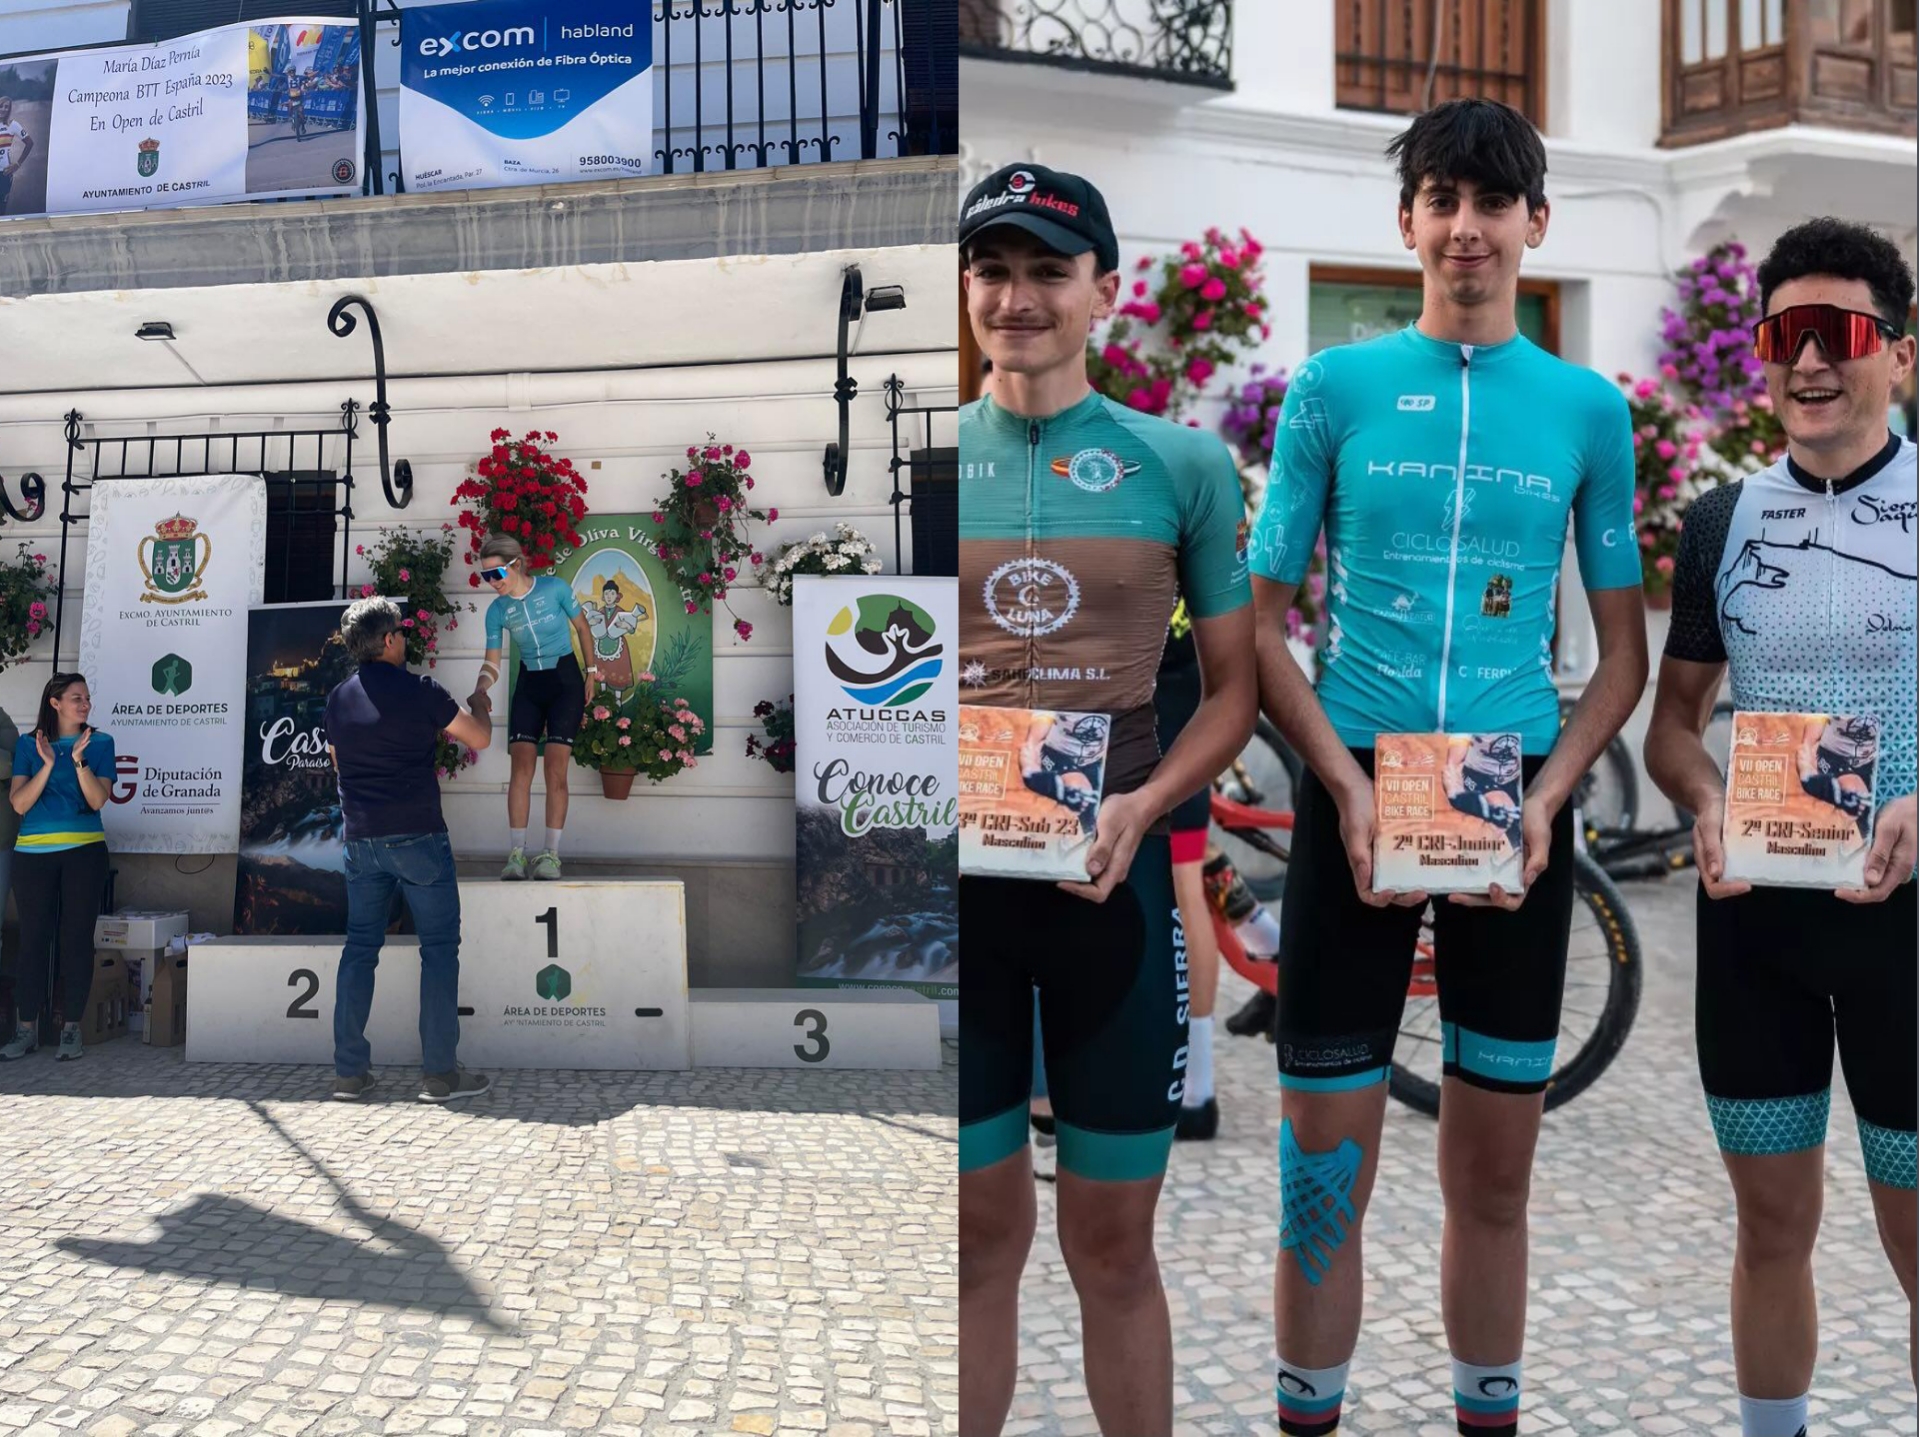 Victoria de Nuria Garrancho y segundos puestos para Daniel Moreno y Daniel Guirado en varias categorías del VII Open Castril Bike Race